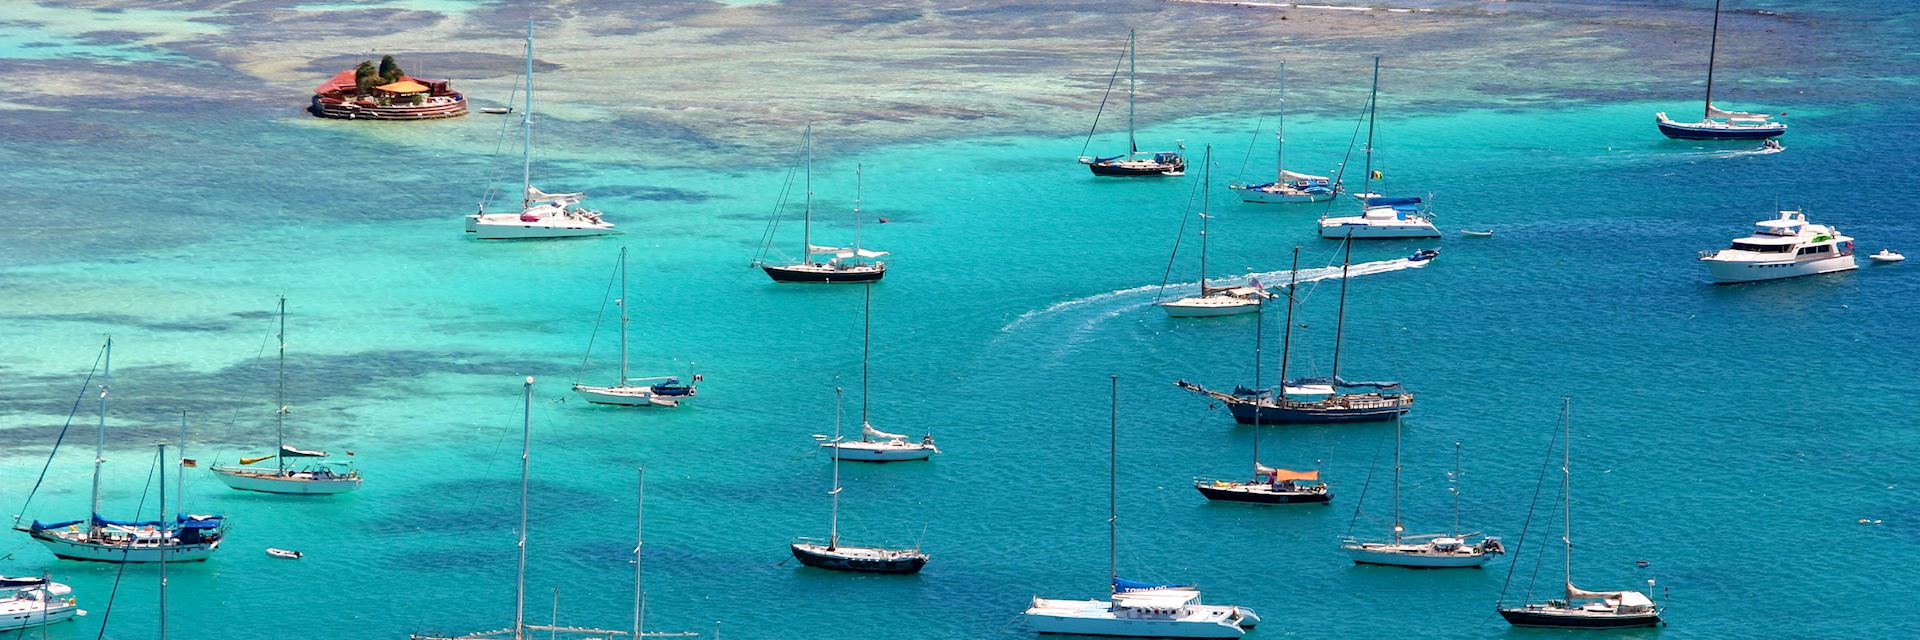 Sailing in the Caribbean, Grenada